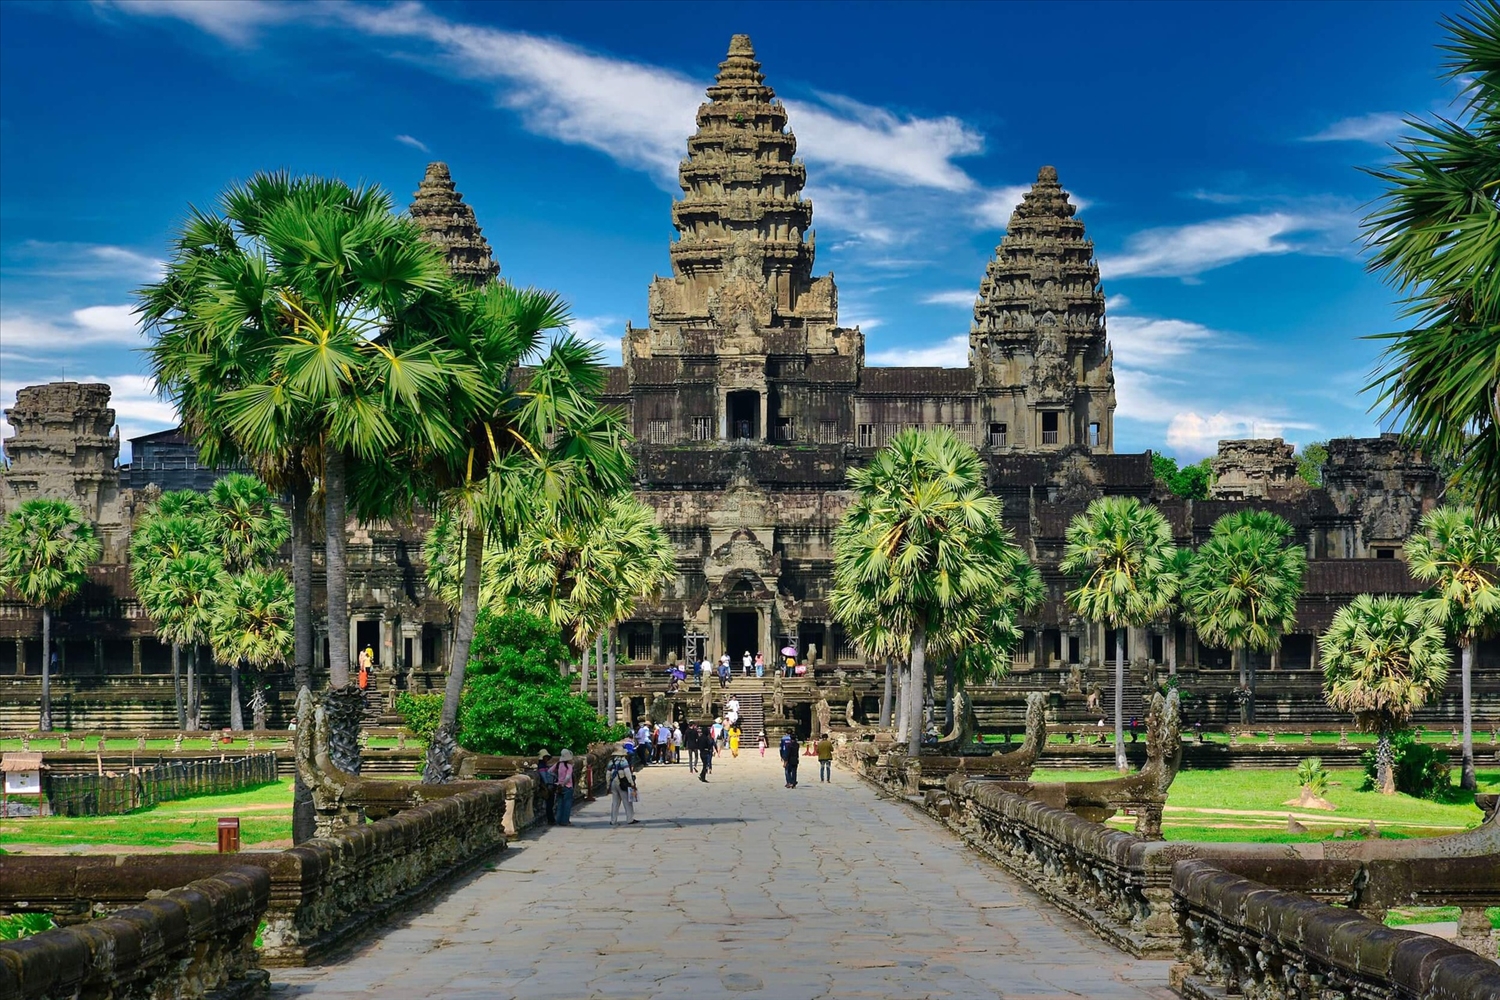 Du Lịch Campuchia – Kinh nghiệm du lịch và điểm đến nổi tiếng ở Campuchia